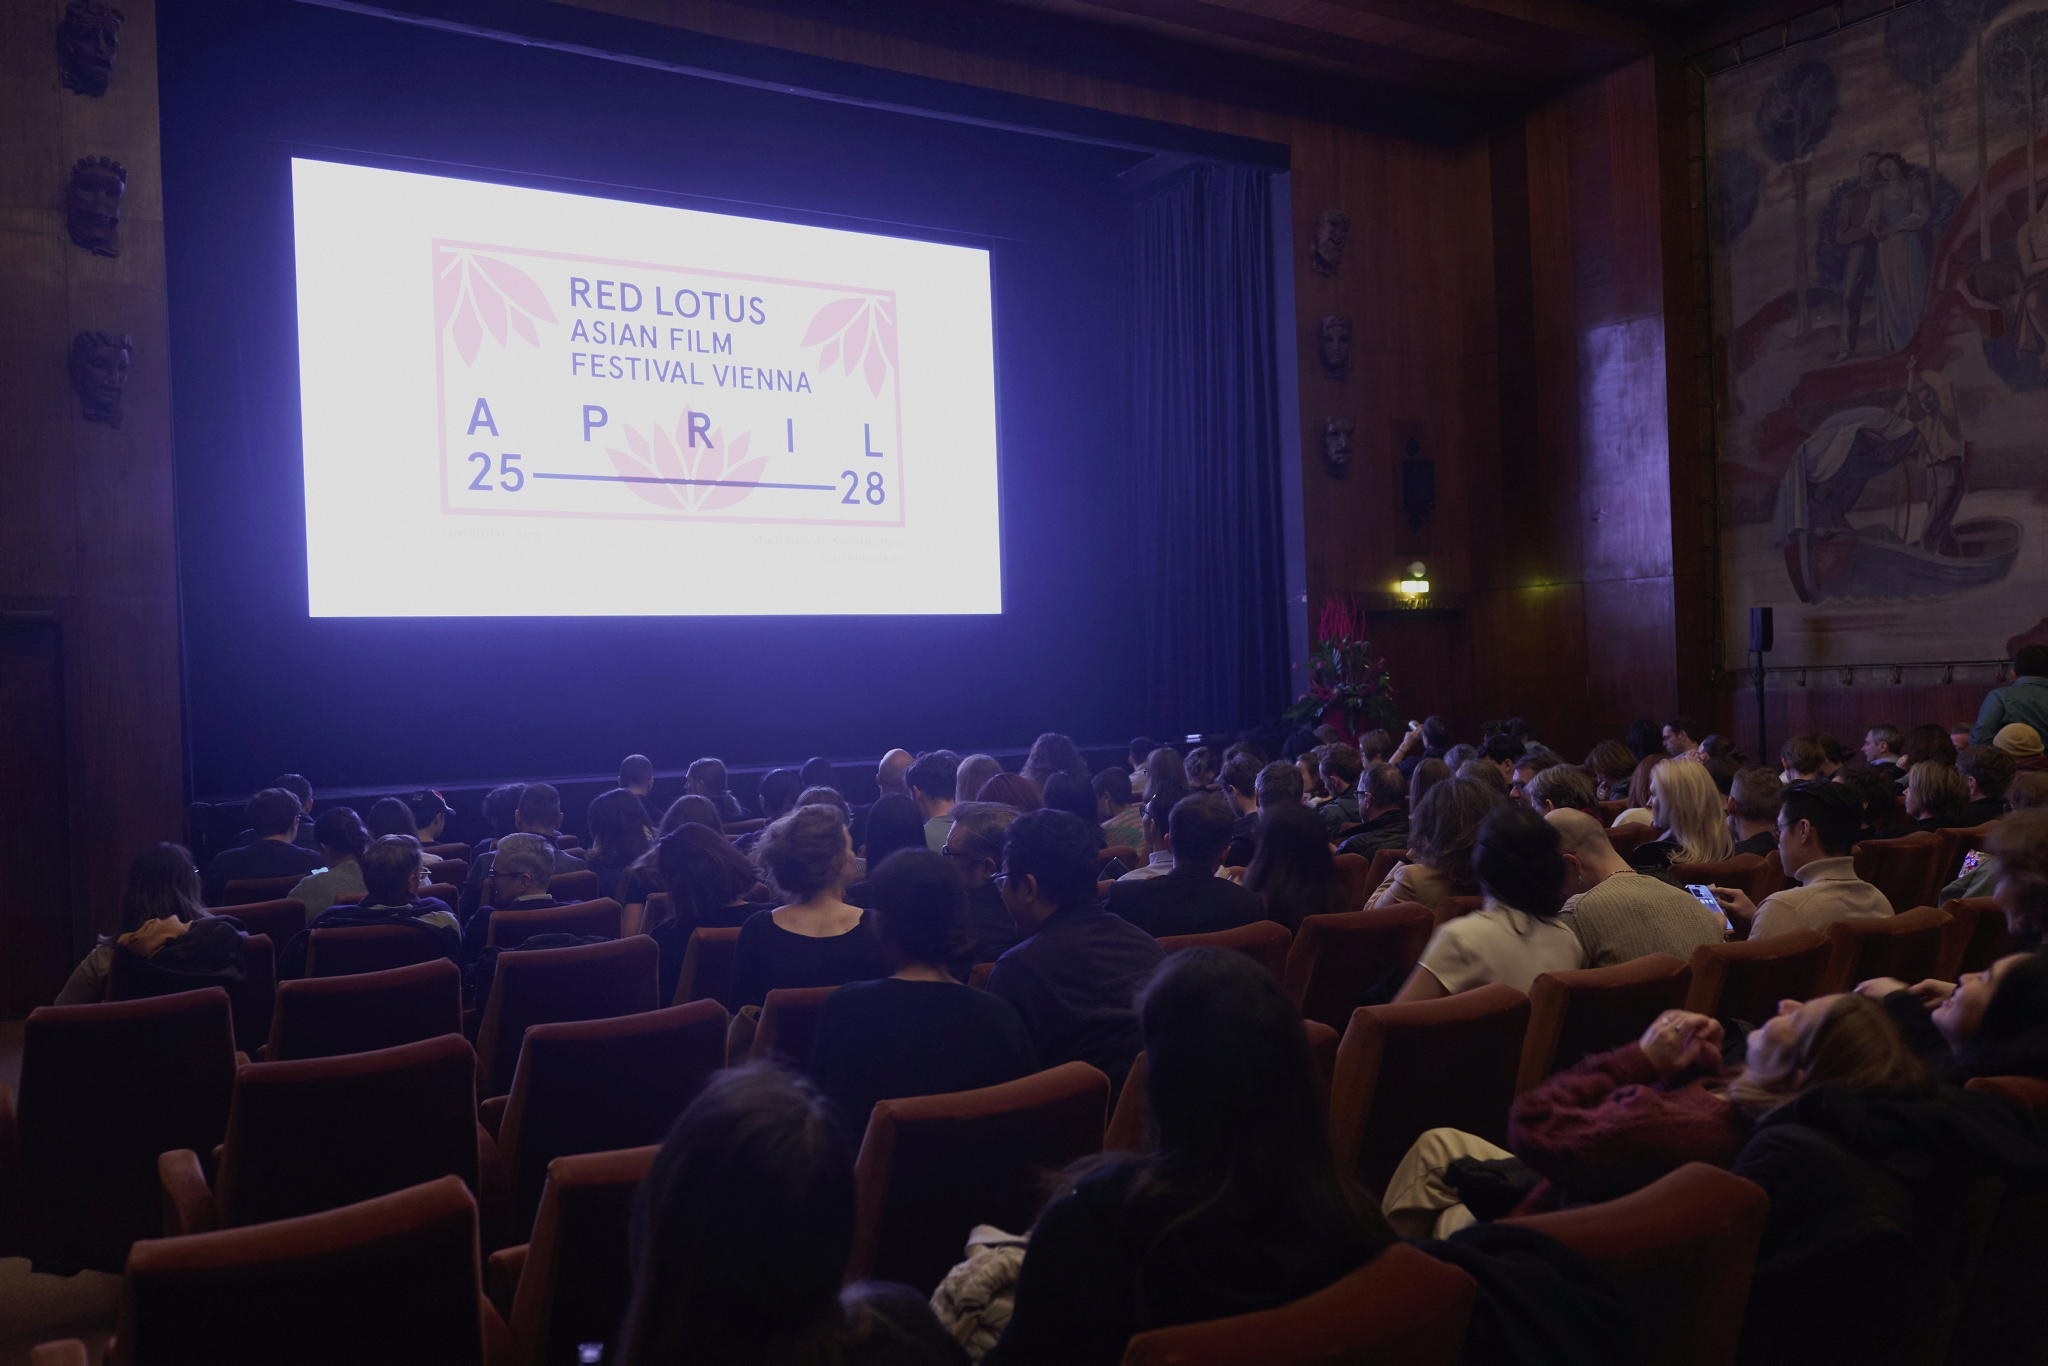 1.香港駐柏林經濟貿易辦事處支持第三屆Red Lotus亞洲電影節放映兩部香港電影。該電影節由四月二十五日至二十八日（維也納時間）在維也納舉行。圖示四月二十六日出席「香港環節」開幕放映會的觀眾。